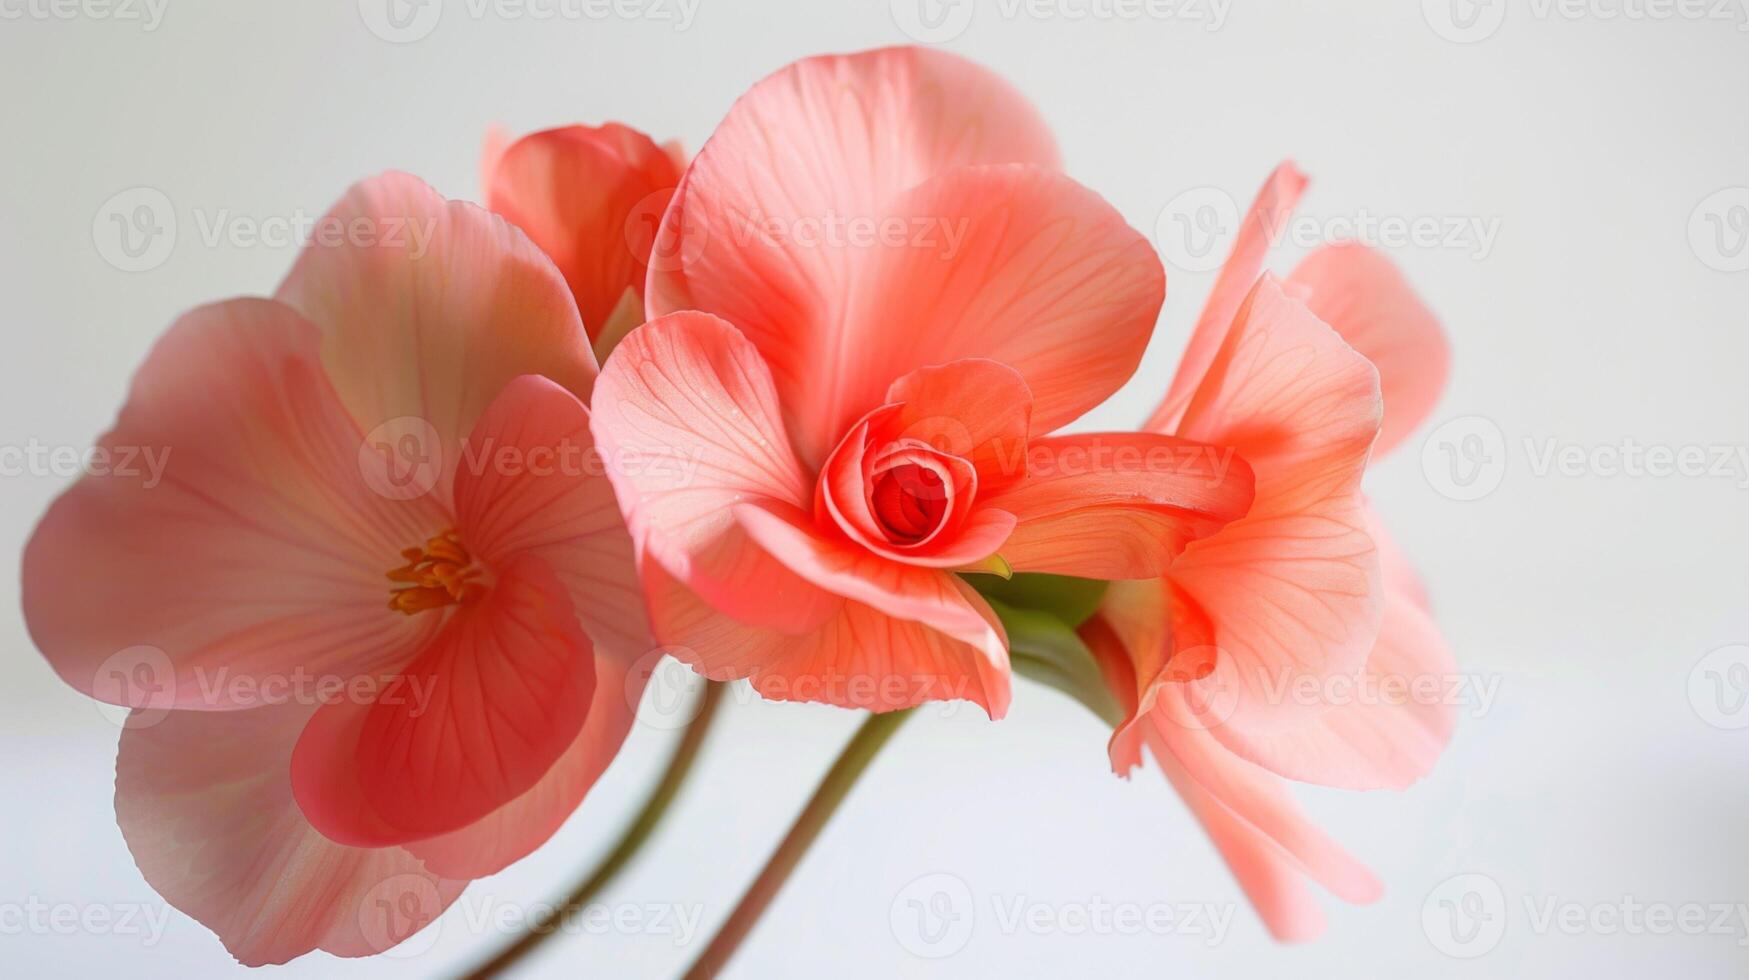 de cerca de un delicado rosado begonia flor en lleno floración con suave pétalos y vibrante belleza foto